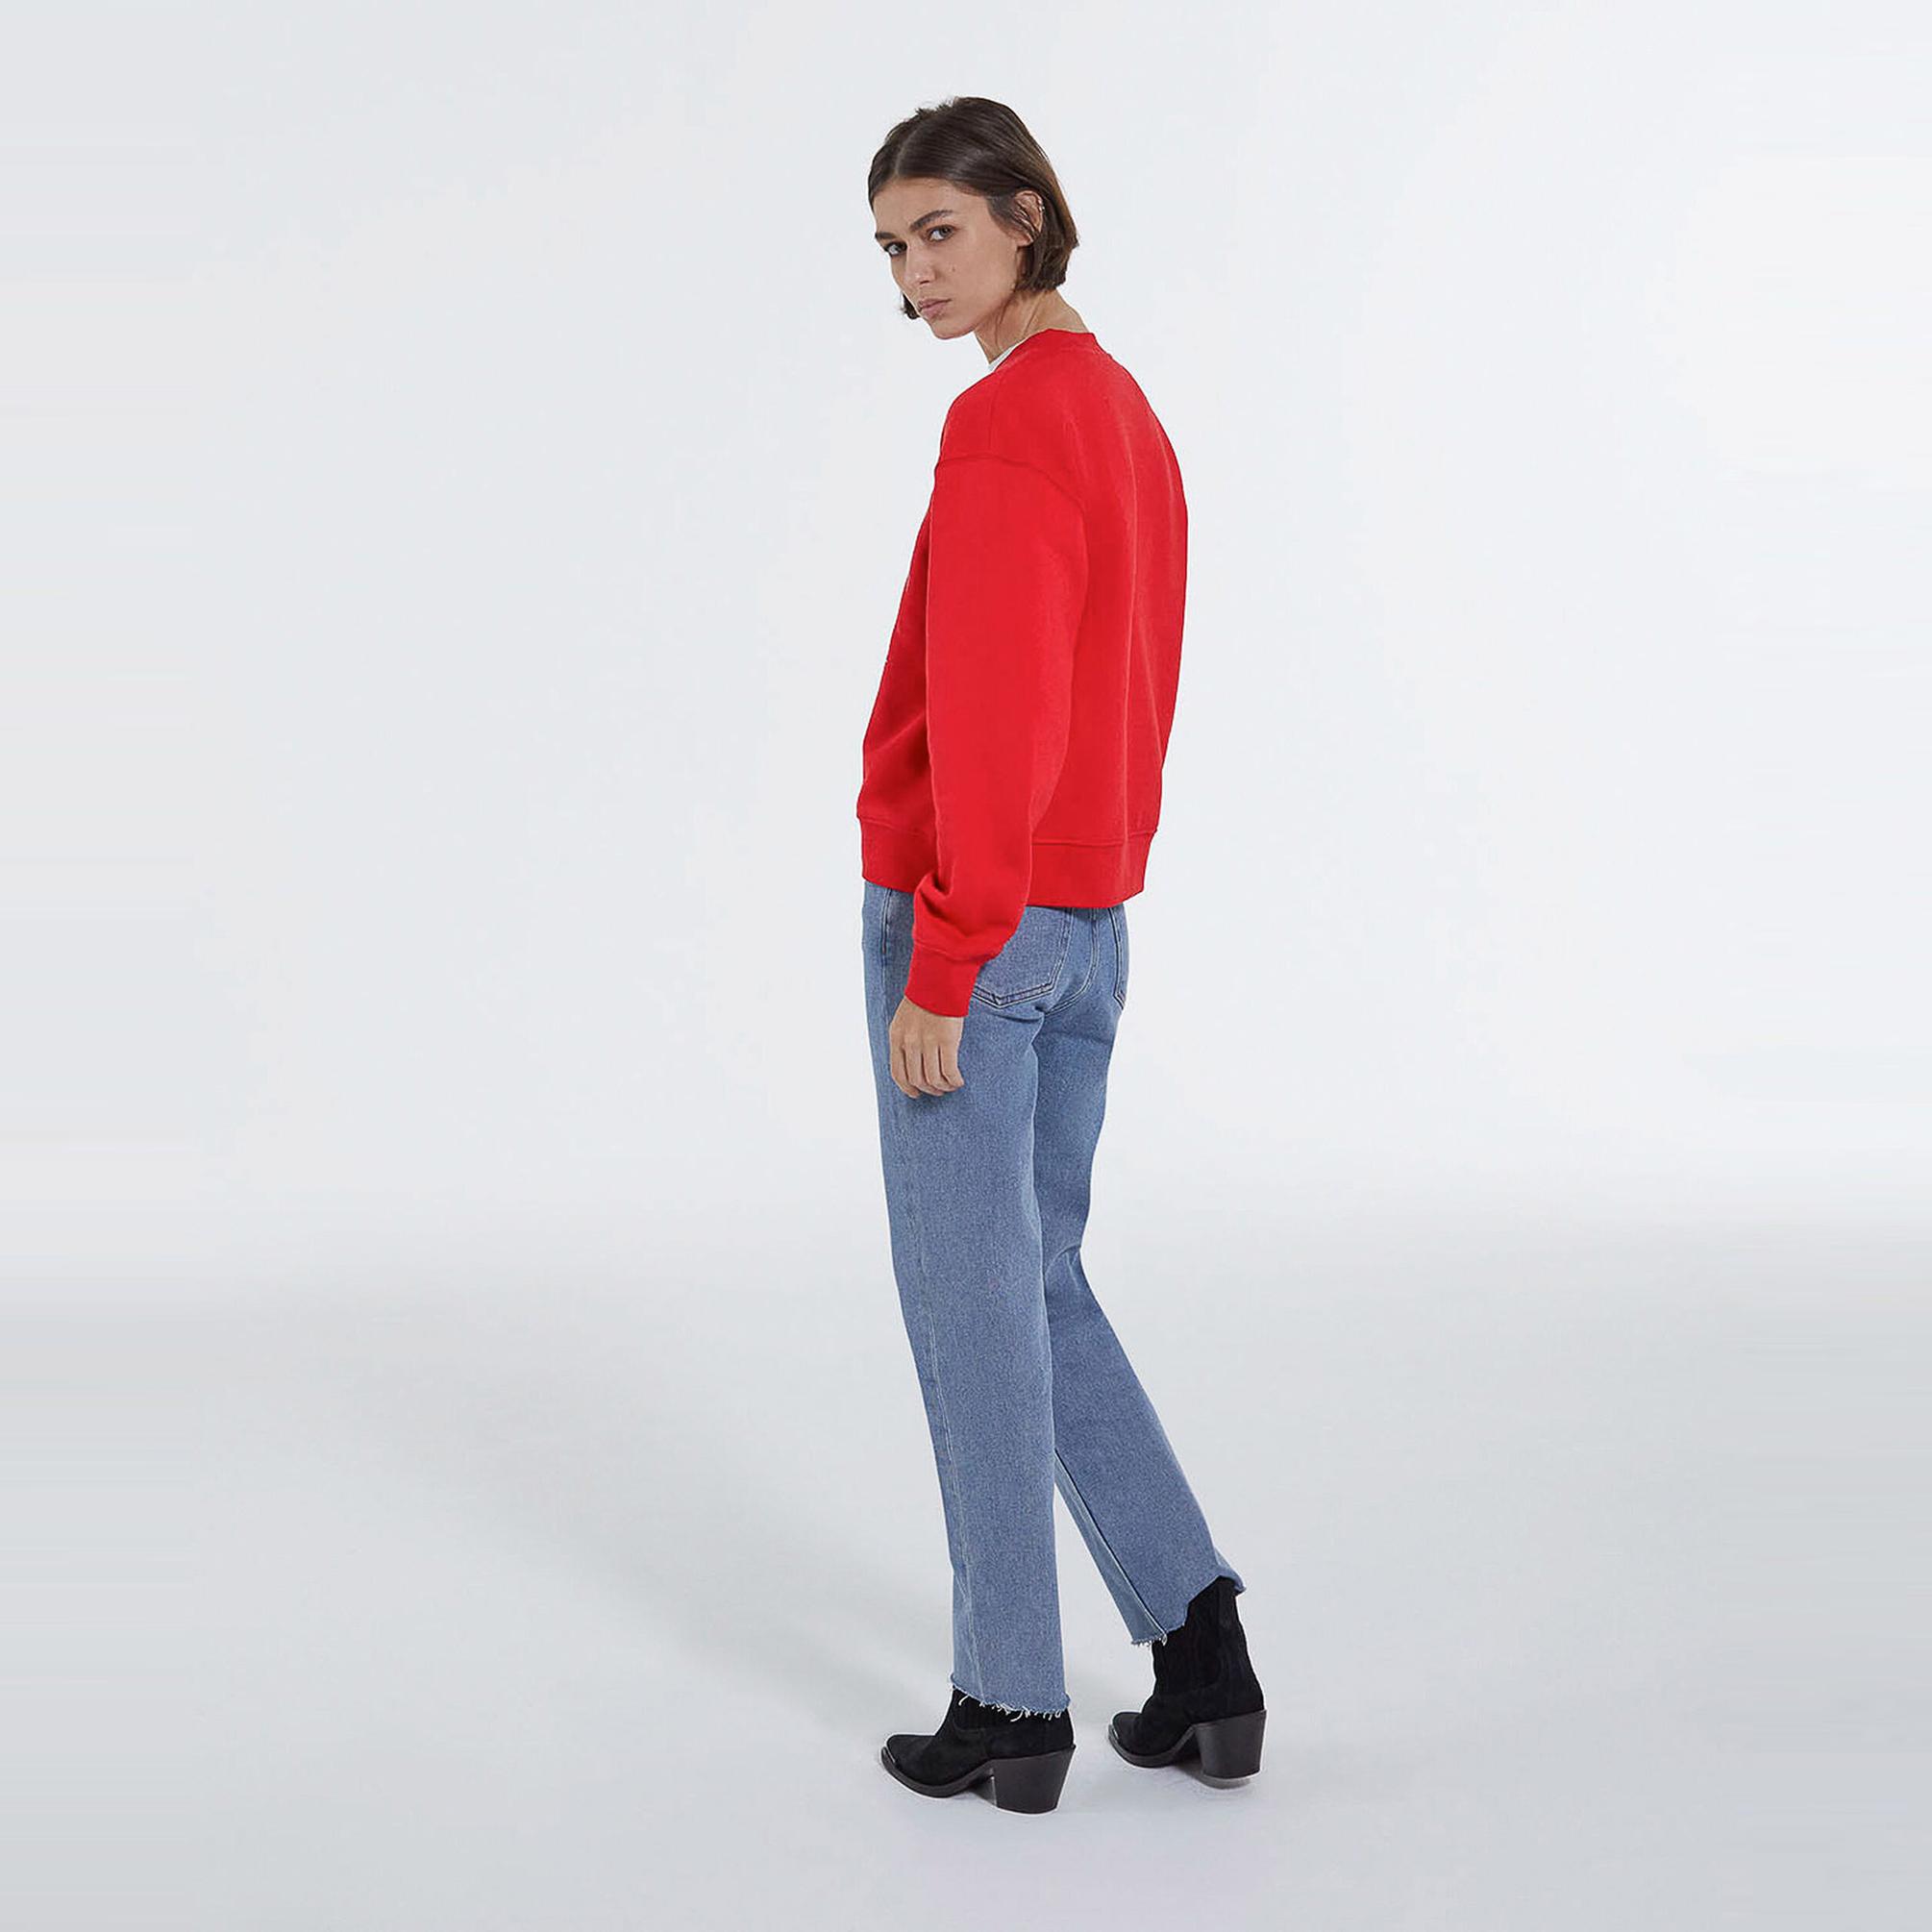  The Kooples Yarım Fermuarlı Kadın Kırmızı Sweatshirt